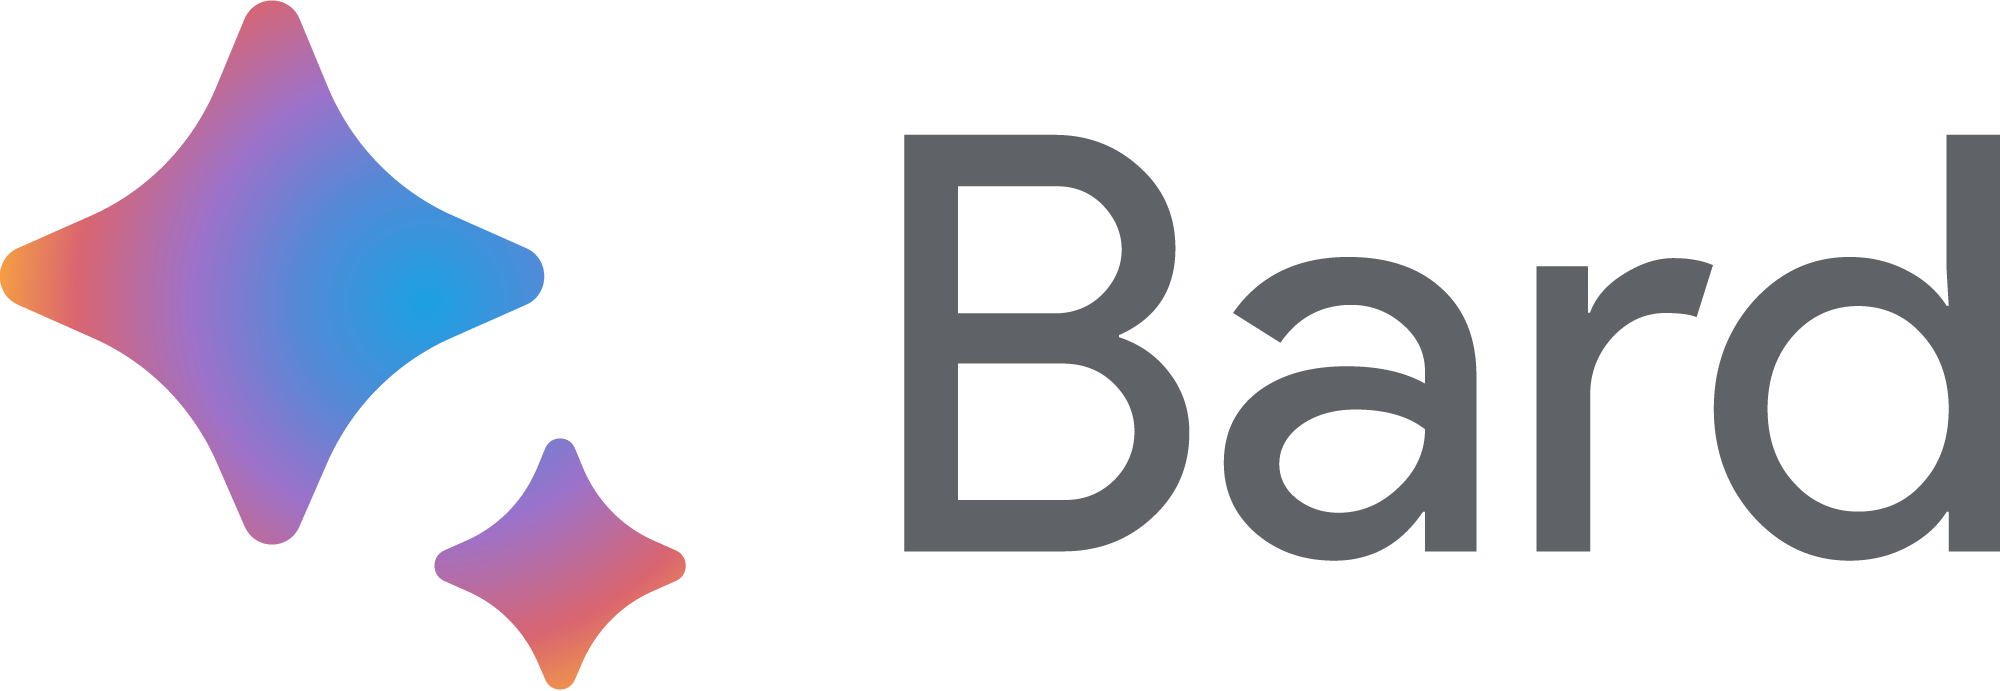 bard logo png